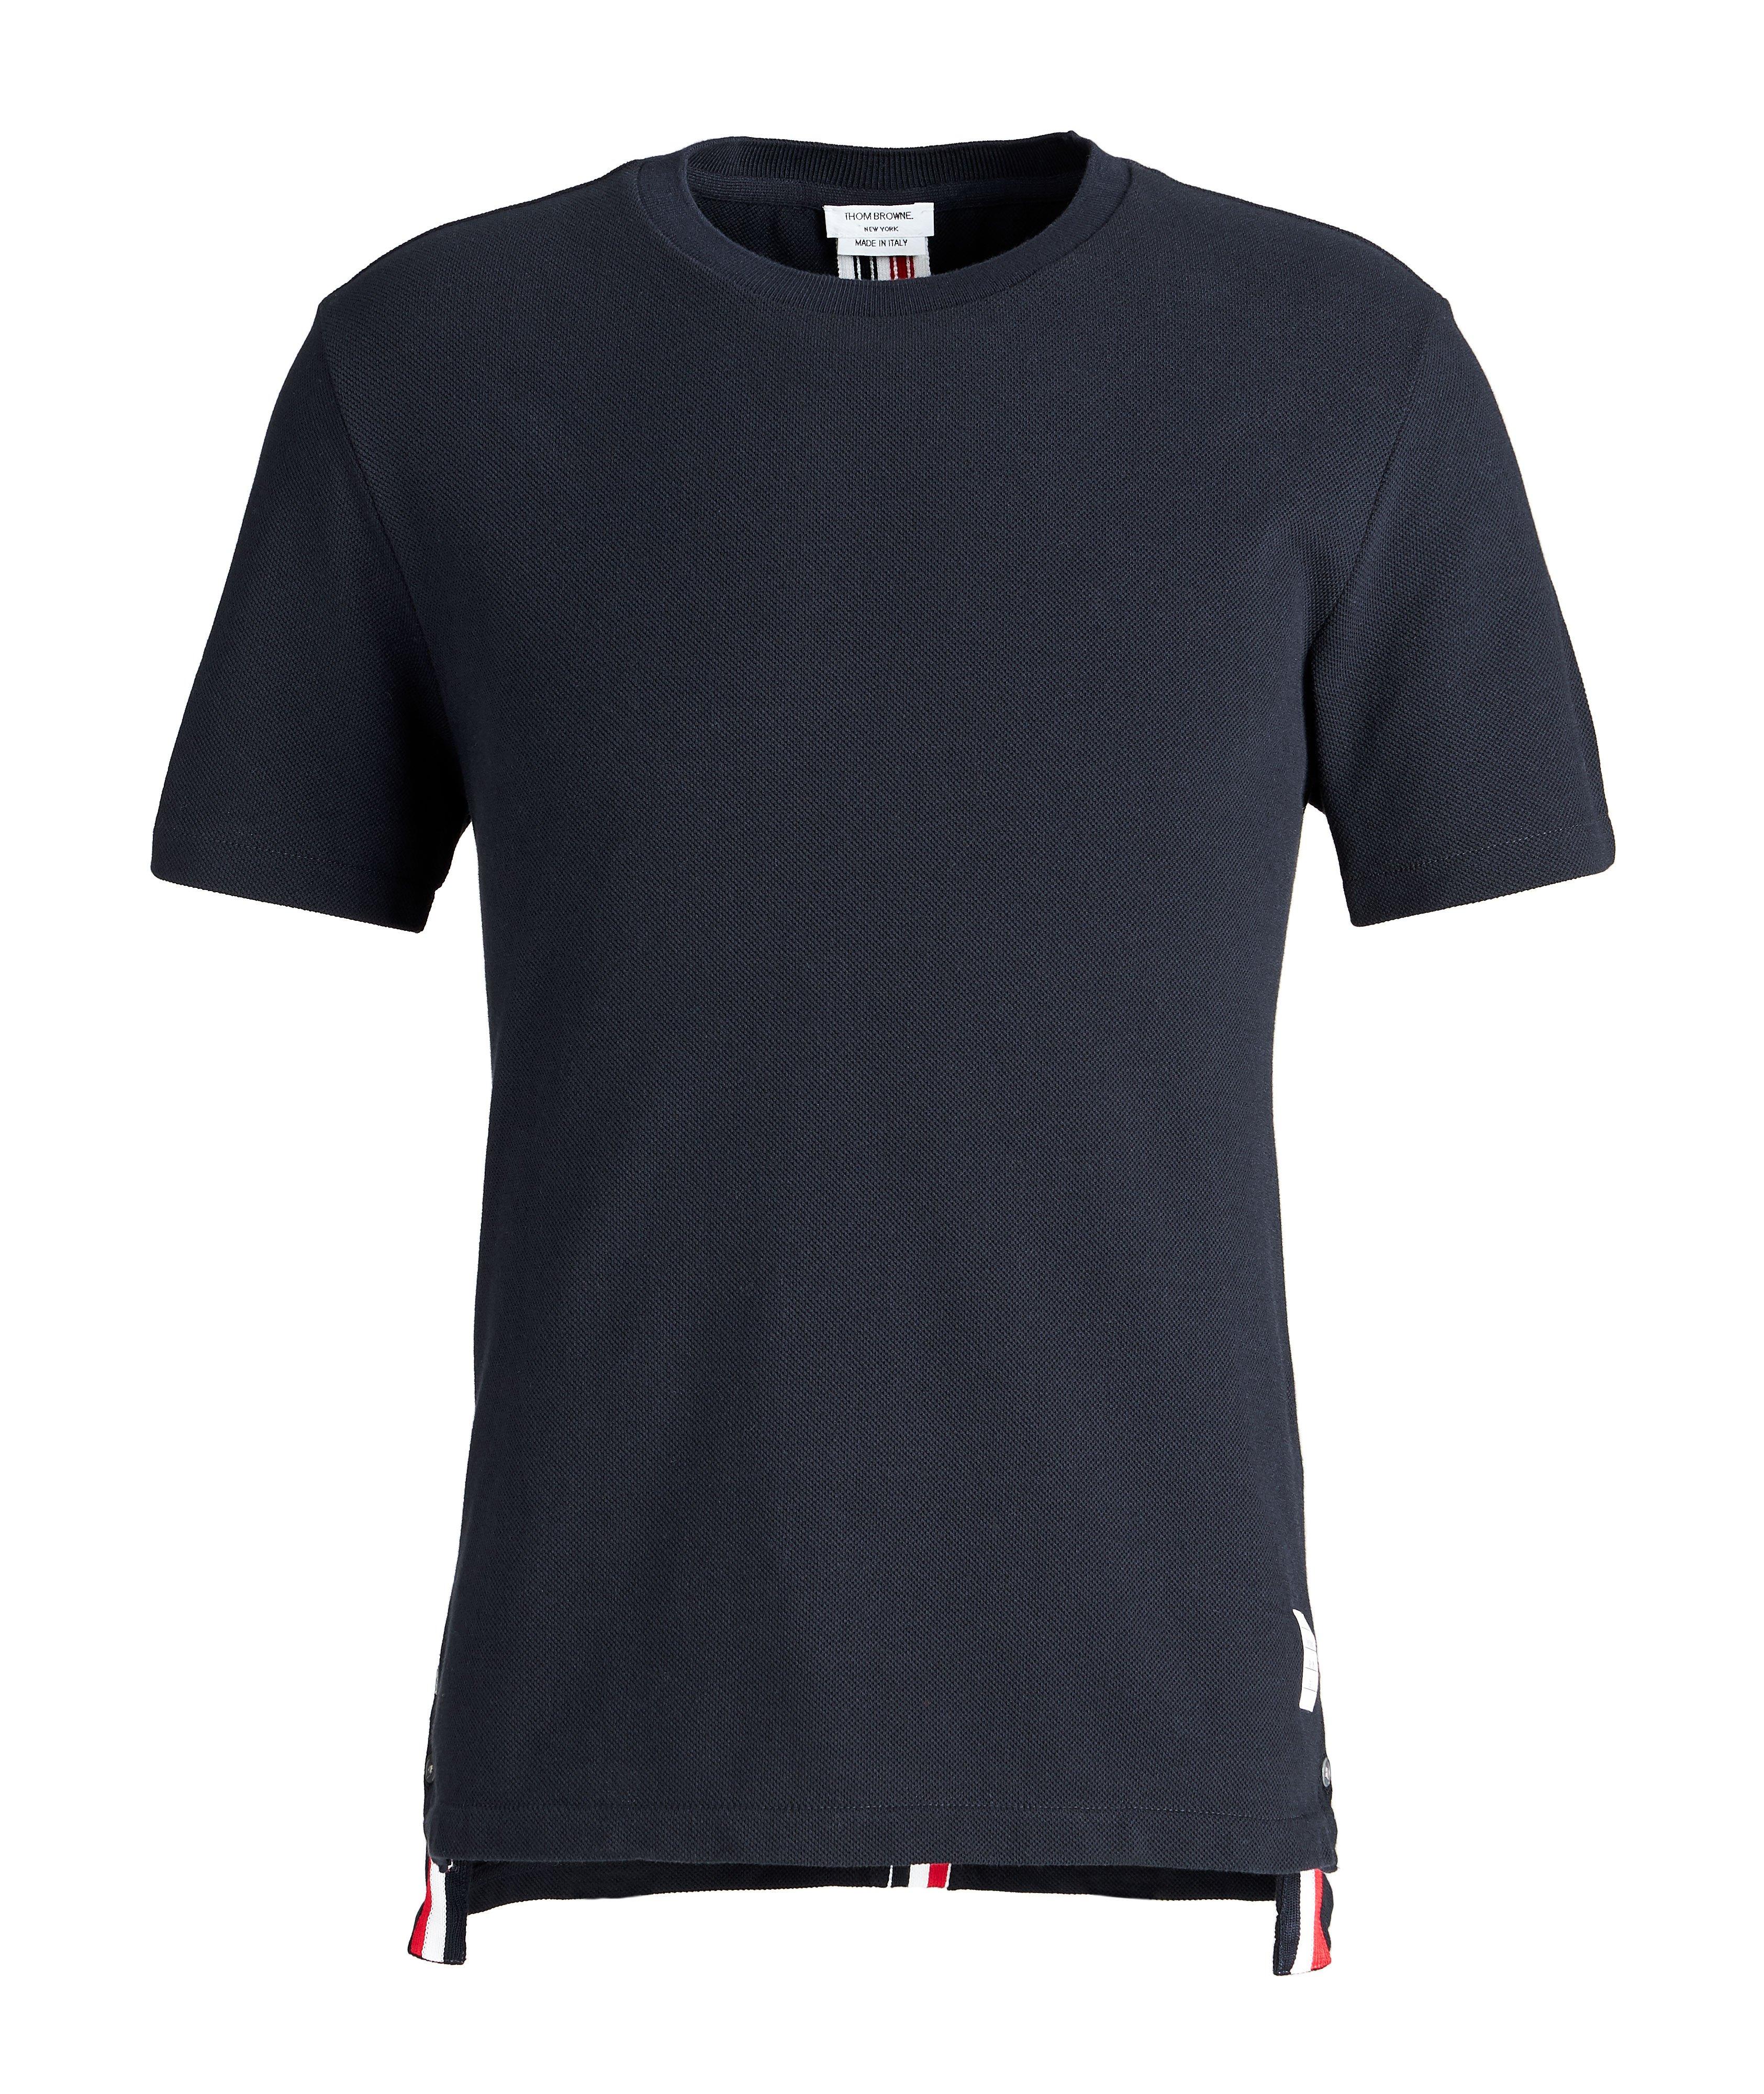 T-shirt en coton piqué avec ruban tricolore image 0